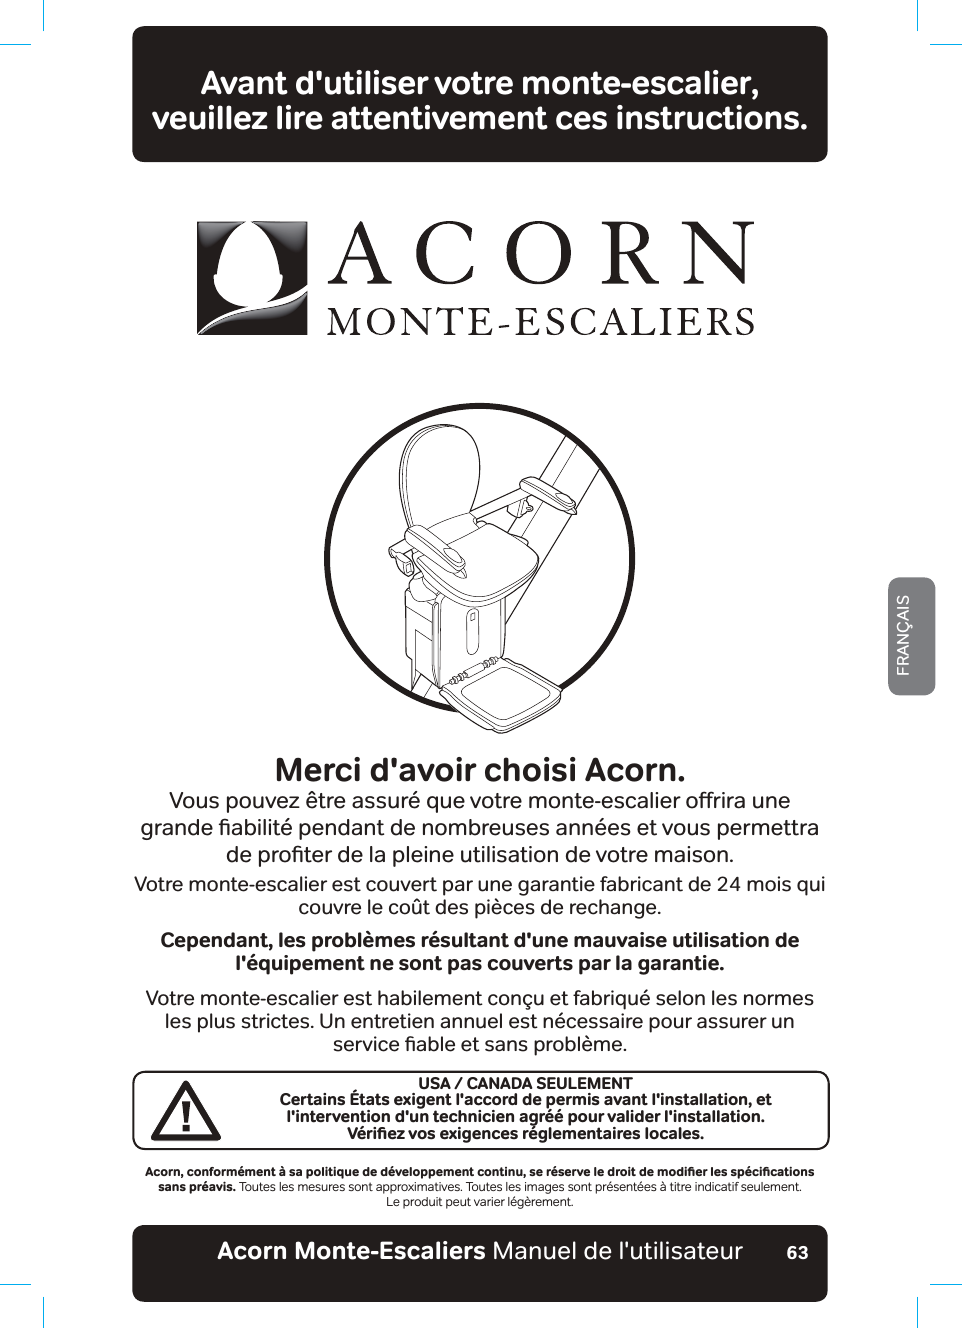 Acorn Monte-Escaliers Manuel de l&apos;utilisateurFRANÇAIS63Avant d&apos;utiliser votre monte-escalier,  veuillez lire attentivement ces instructions.Merci d&apos;avoir choisi Acorn.9RXVSRXYH]¬WUHDVVXU«TXHYRWUHPRQWHHVFDOLHURƵULUDXQHJUDQGHƶDELOLW«SHQGDQWGHQRPEUHXVHVDQQ«HVHWYRXVSHUPHWWUDGHSURƶWHUGHODSOHLQHXWLOLVDWLRQGHYRWUHPDLVRQVotre monte-escalier est couvert par une garantie fabricant de 24 mois qui couvre le coût des pièces de rechange.Cependant, les problèmes résultant d&apos;une mauvaise utilisation de l&apos;équipement ne sont pas couverts par la garantie.Votre monte-escalier est habilement conçu et fabriqué selon les normes les plus strictes. Un entretien annuel est nécessaire pour assurer un VHUYLFHƶDEOHHWVDQVSUREOªPH#EQTPǊEQPHQTOªOGPV¡UCRQNKVKSWGFGFªXGNQRRGOGPVEQPVKPWǊUGTªUGTXGNGFTQKVFGOQFKƵGTNGUURªEKƵECVKQPUsans préavis. Toutes les mesures sont approximatives. Toutes les images sont présentées à titre indicatif seulement.Le produit peut varier légèrement.USA / CANADA SEULEMENTCertains États exigent l&apos;accord de permis avant l&apos;installation, et l&apos;intervention d&apos;un technicien agréé pour valider l&apos;installation.8ªTKƵG\XQUGZKIGPEGUTªINGOGPVCKTGUNQECNGU